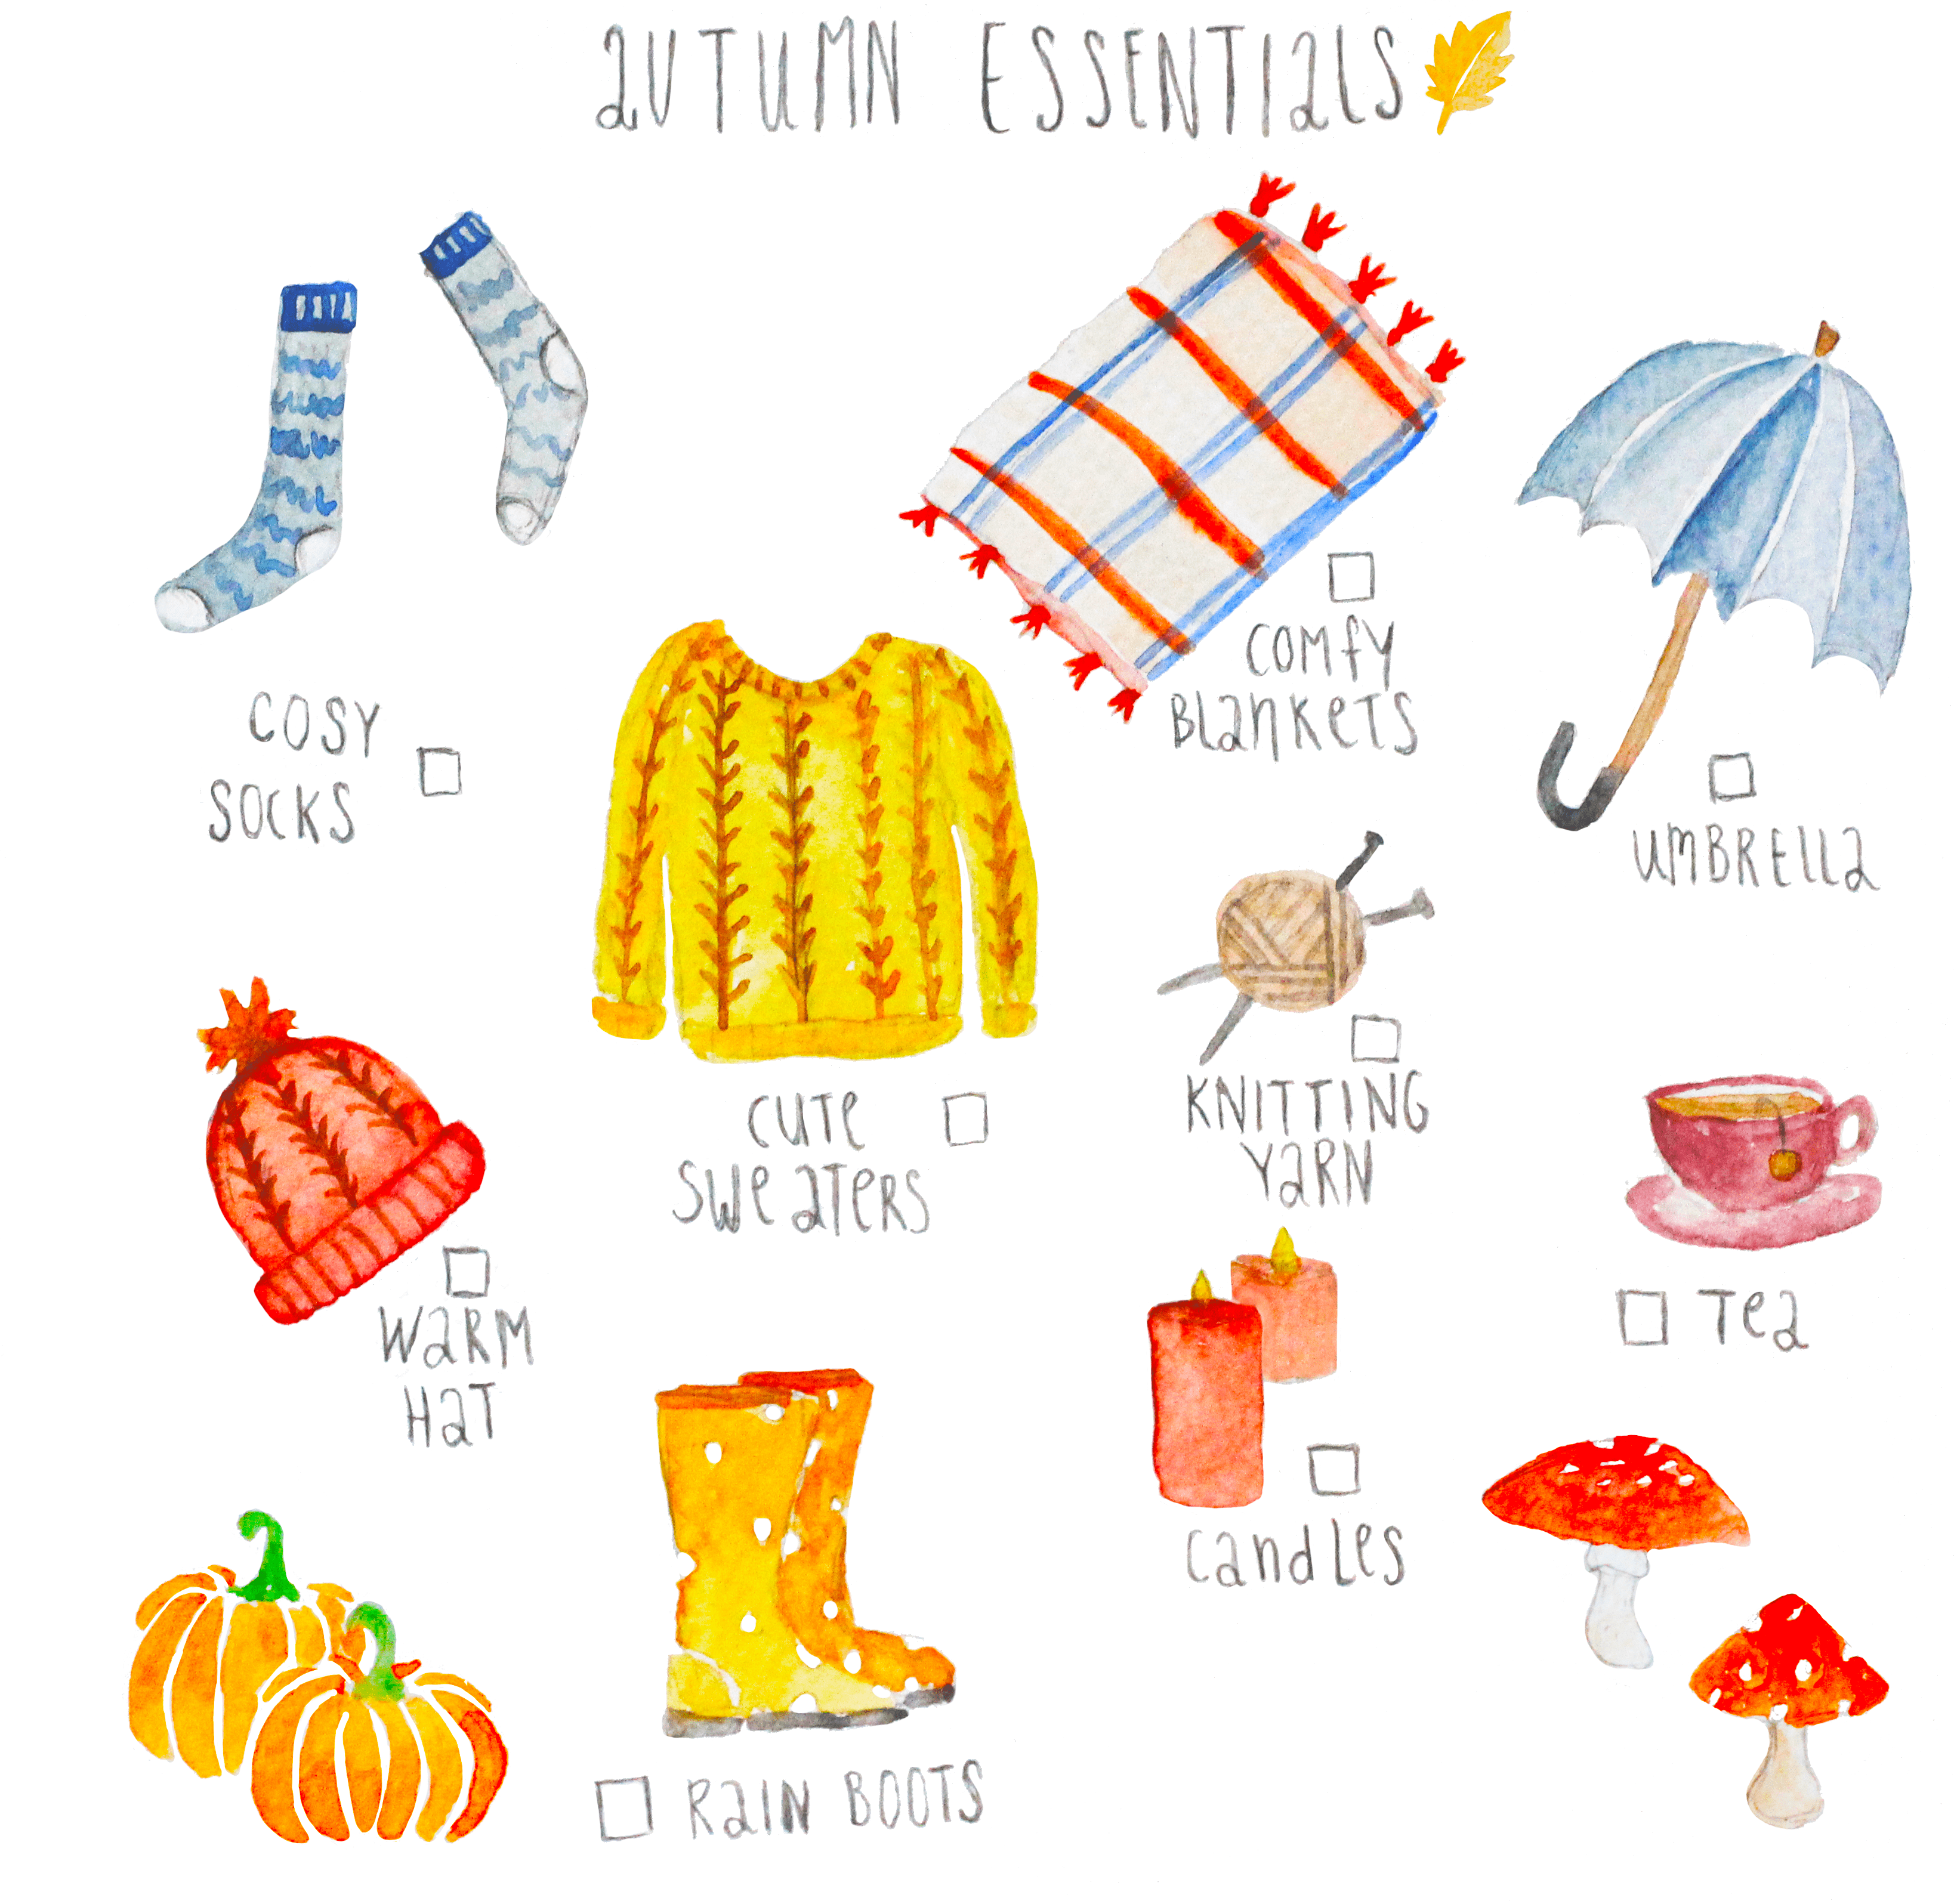 Autumn essentials illustration